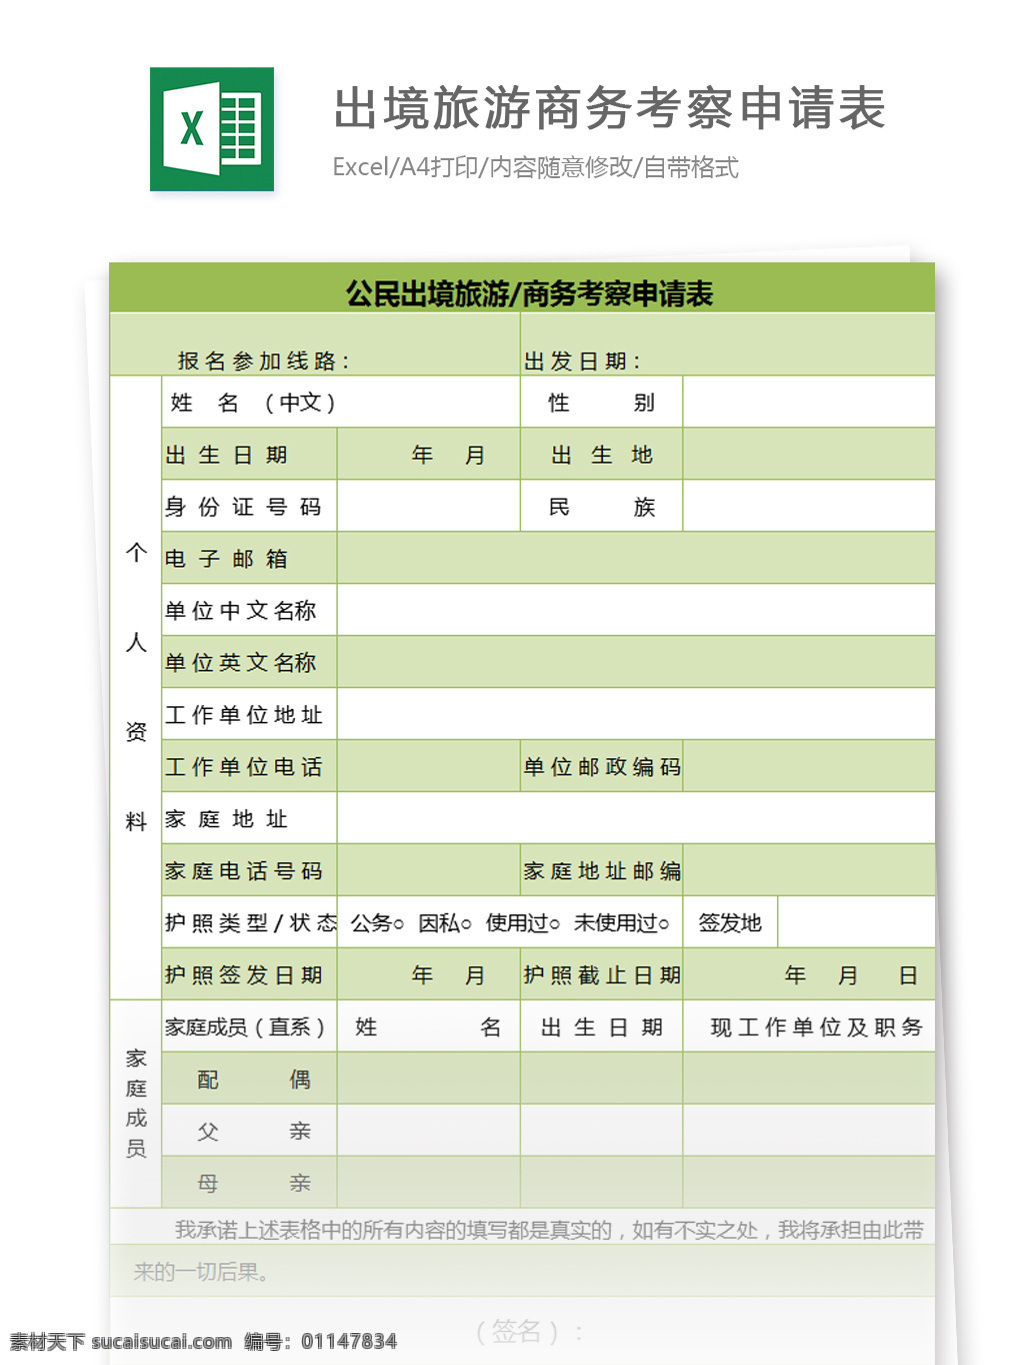 公民 出境旅游 商务考察 申请表 excel 模板 表格模板 图表 表格设计 表格